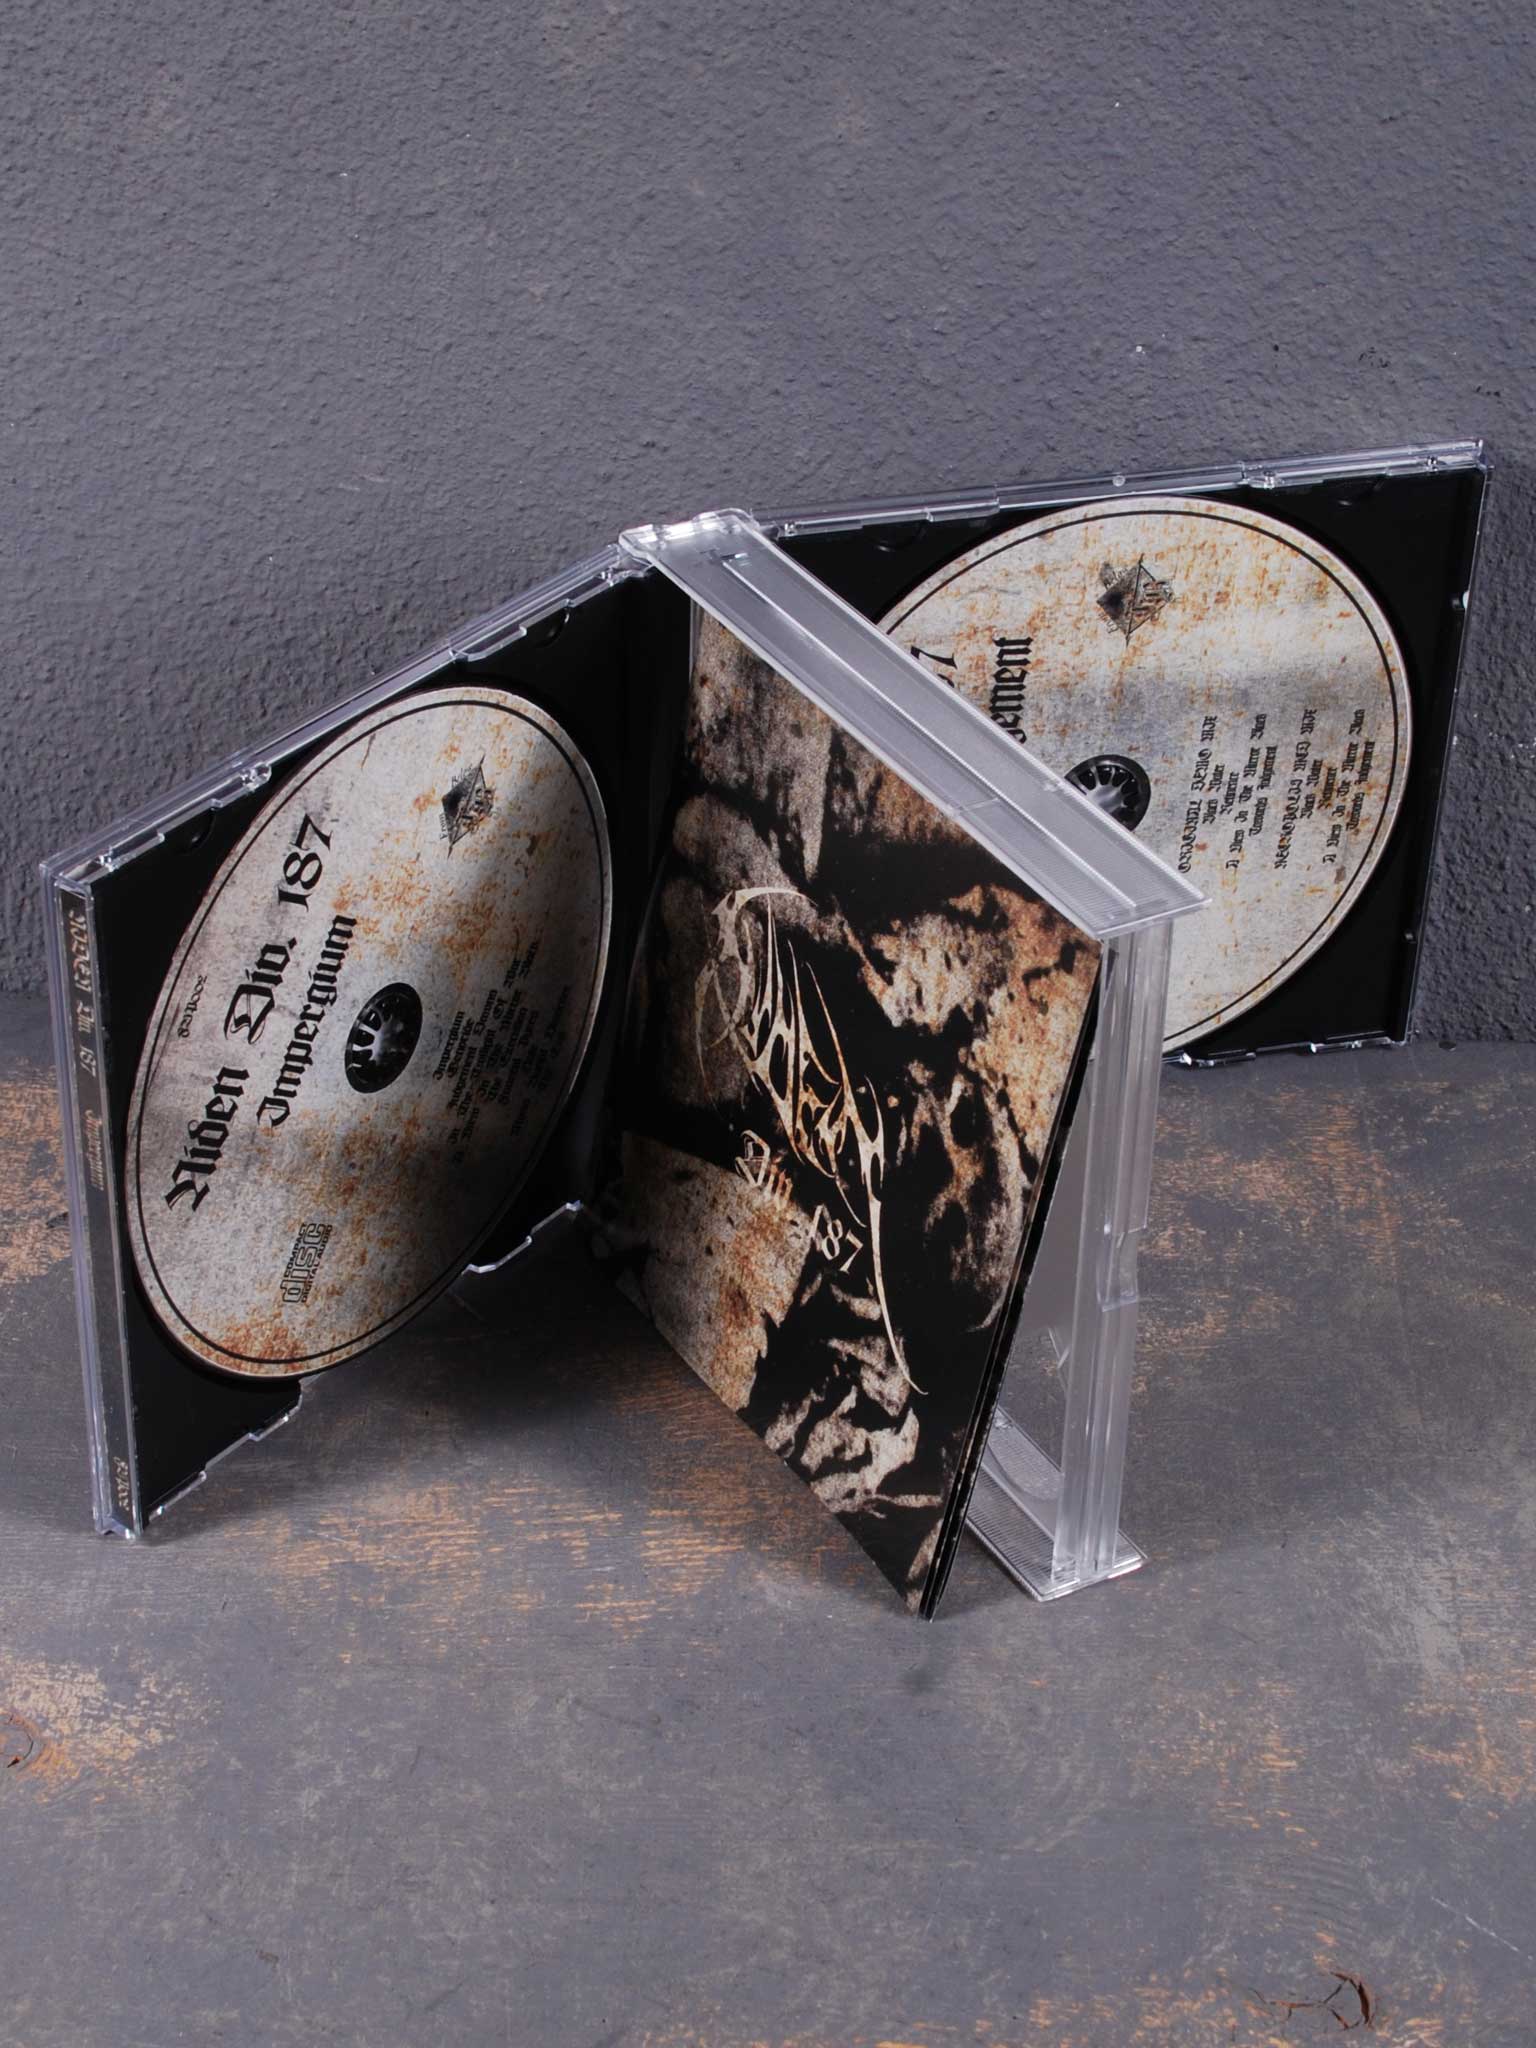 Div.　рок-магазине　Shop,　2CD　купить　Box　Judgement　Impergium/Towards　Украина　Niden　Metal　187　в